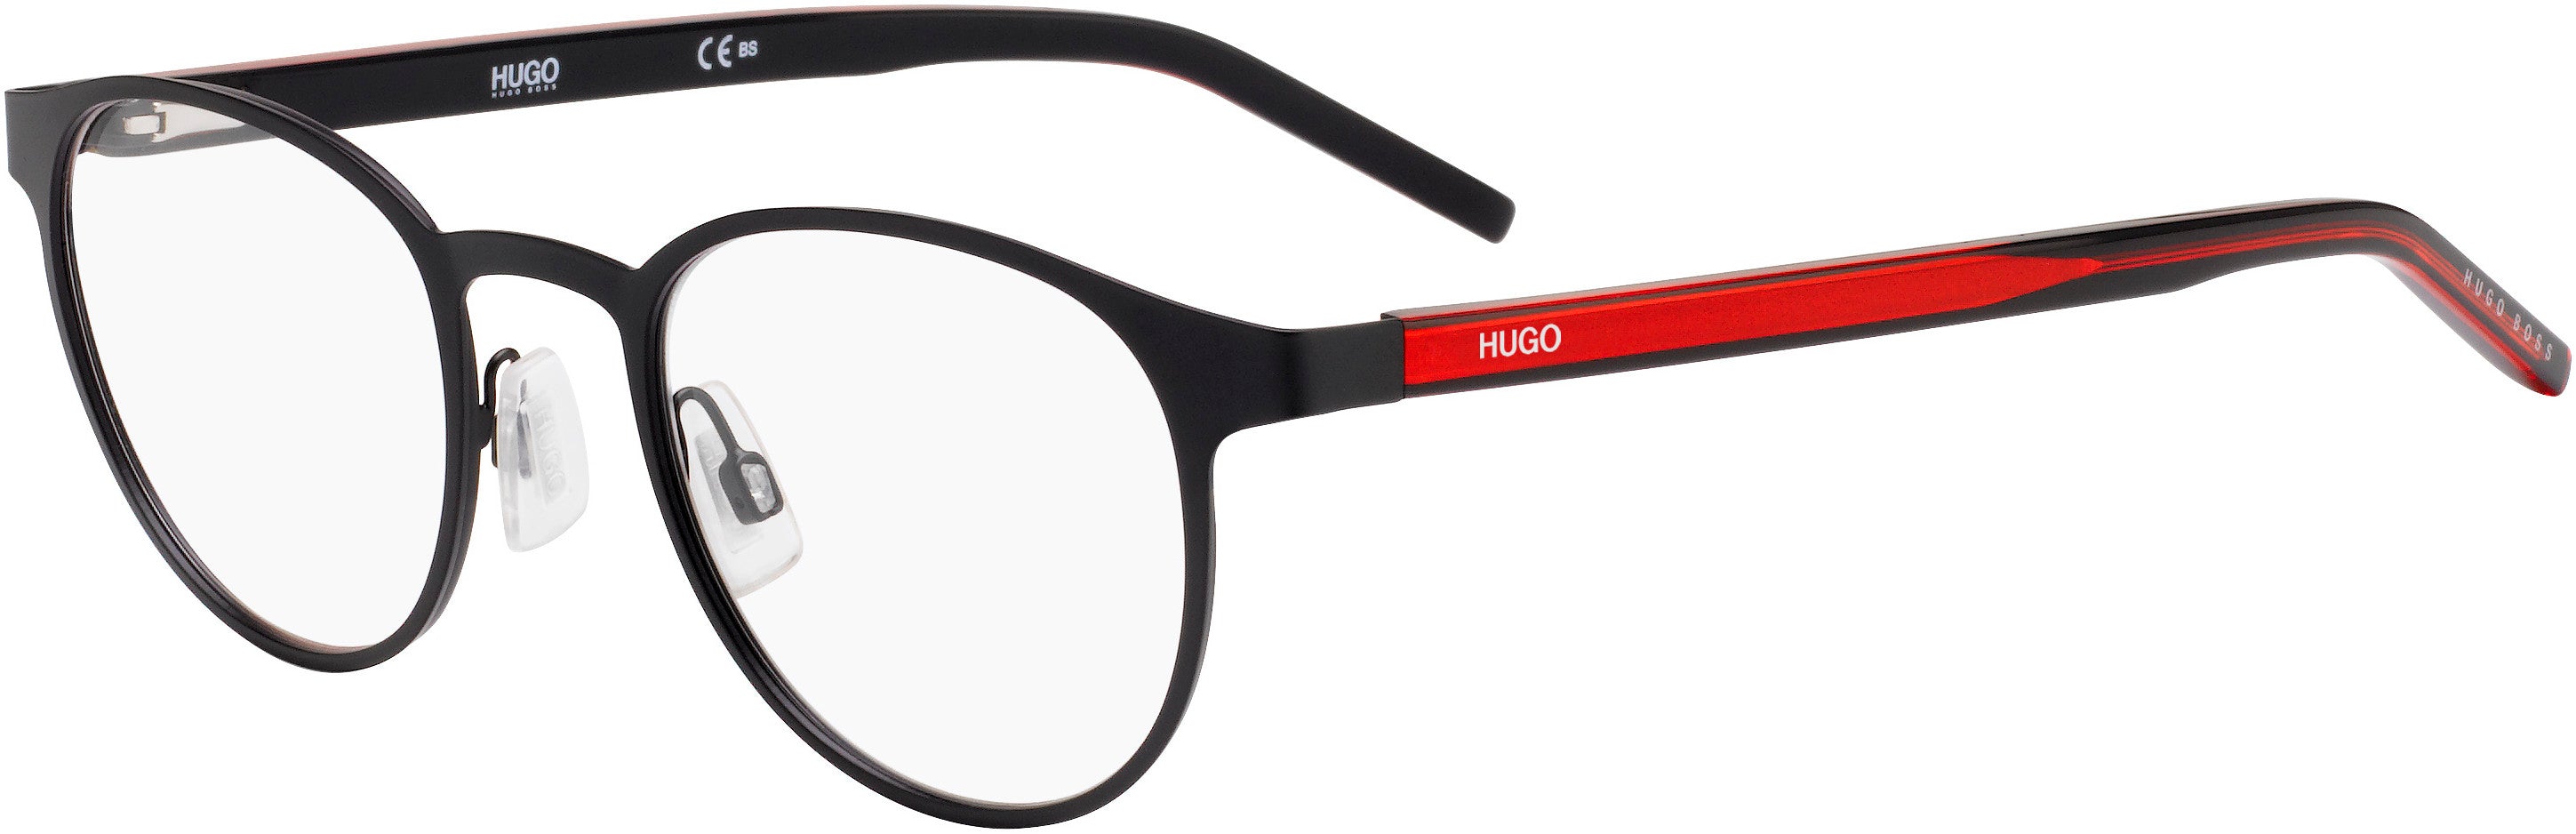 Hugo (hug) Hugo 1030 Oval Modified Eyeglasses 0BLX-0BLX  Bkrt Crystal Red (00 Demo Lens)